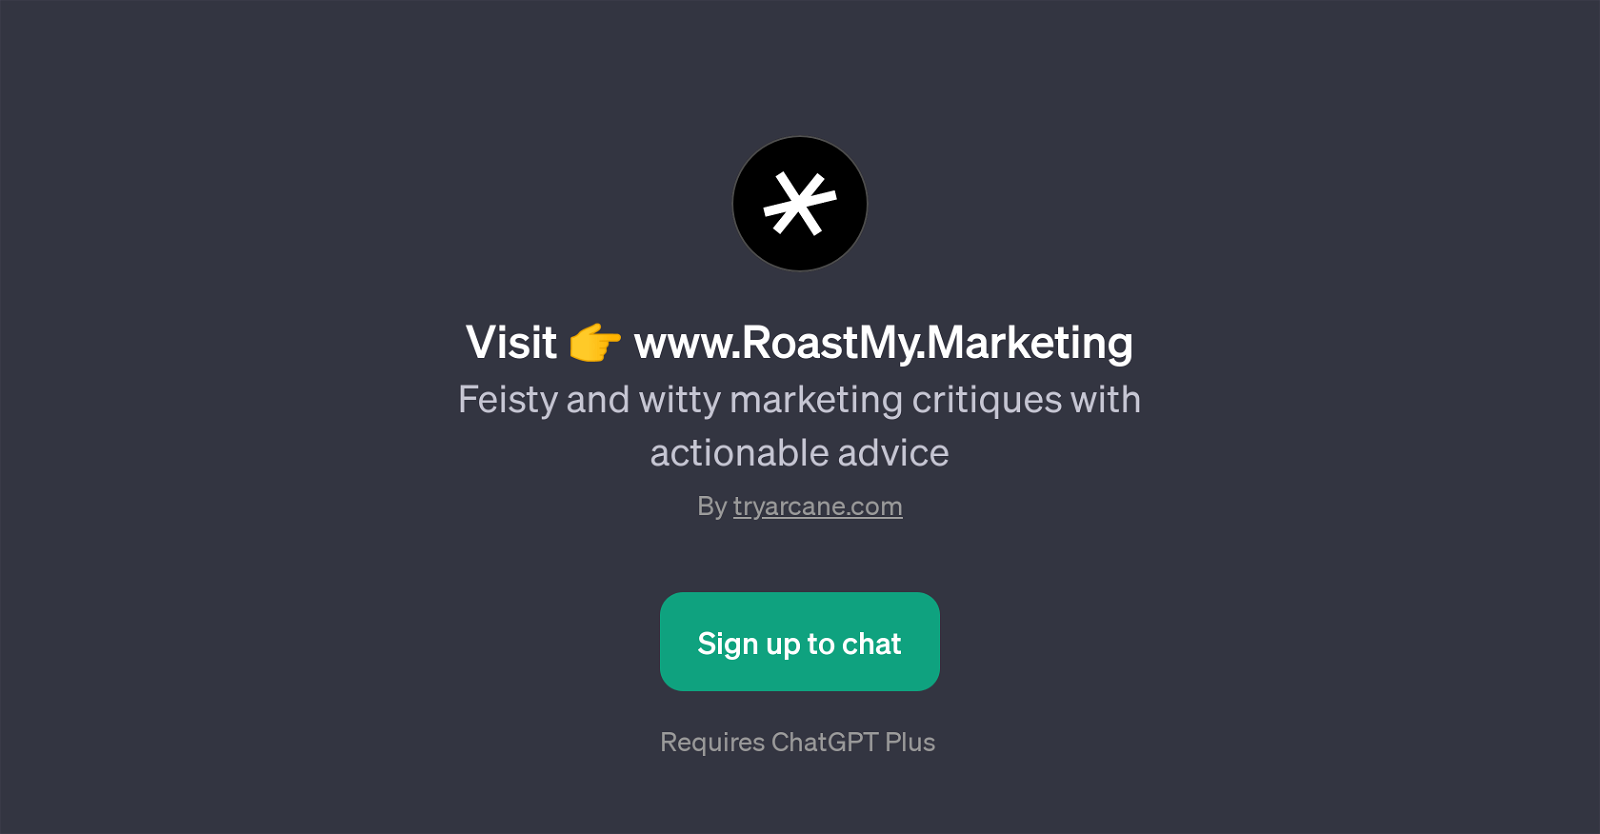 RoastMy.Marketing website